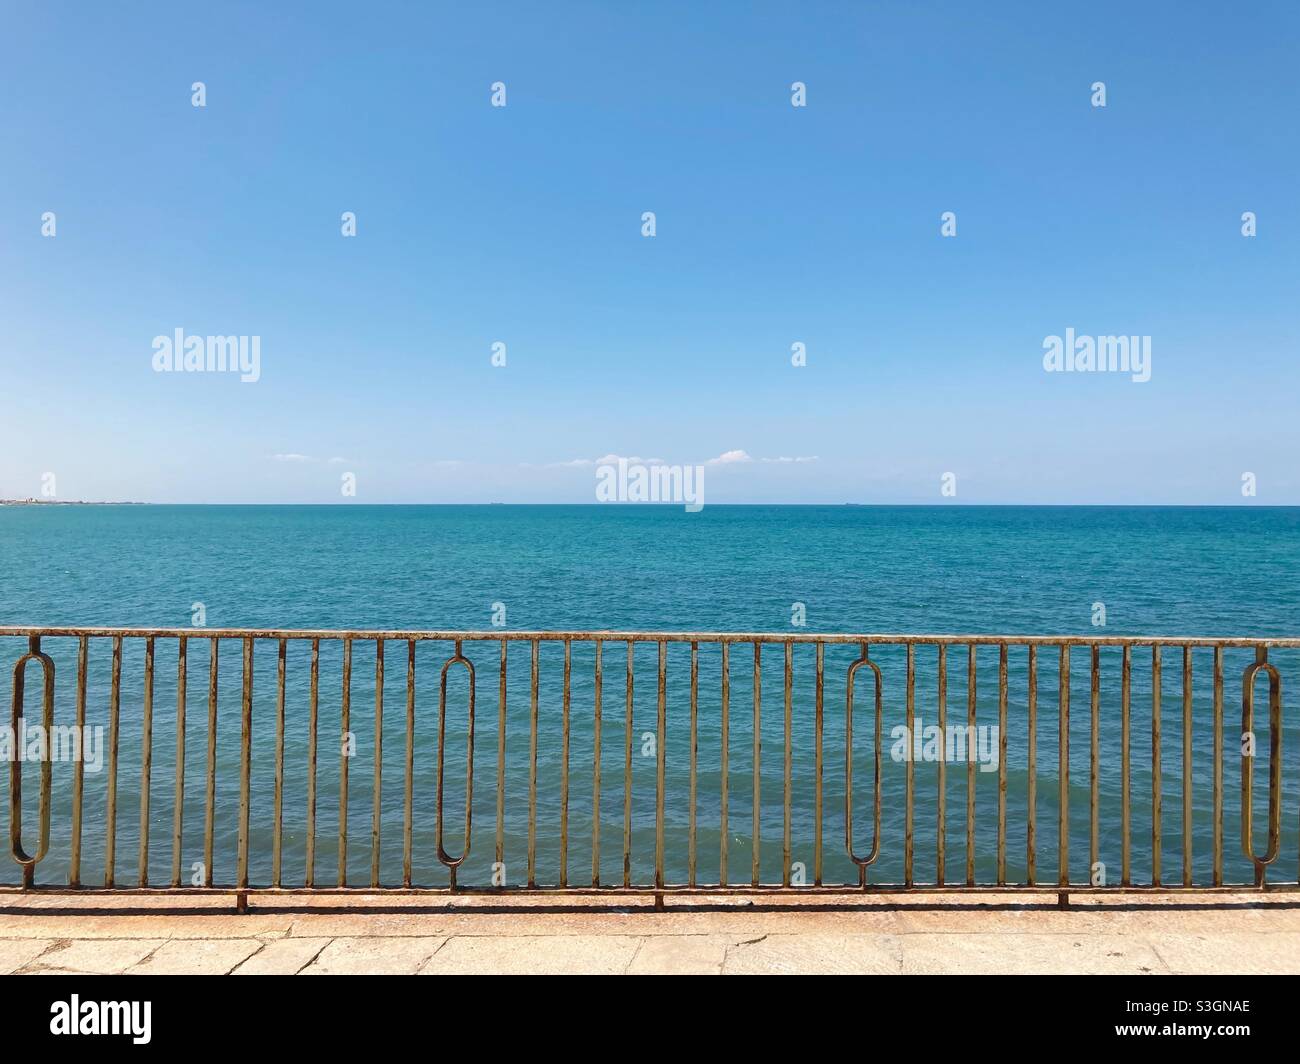 Une clôture métallique sur la mer Adriatique dans la ville de Trani, Italie Banque D'Images